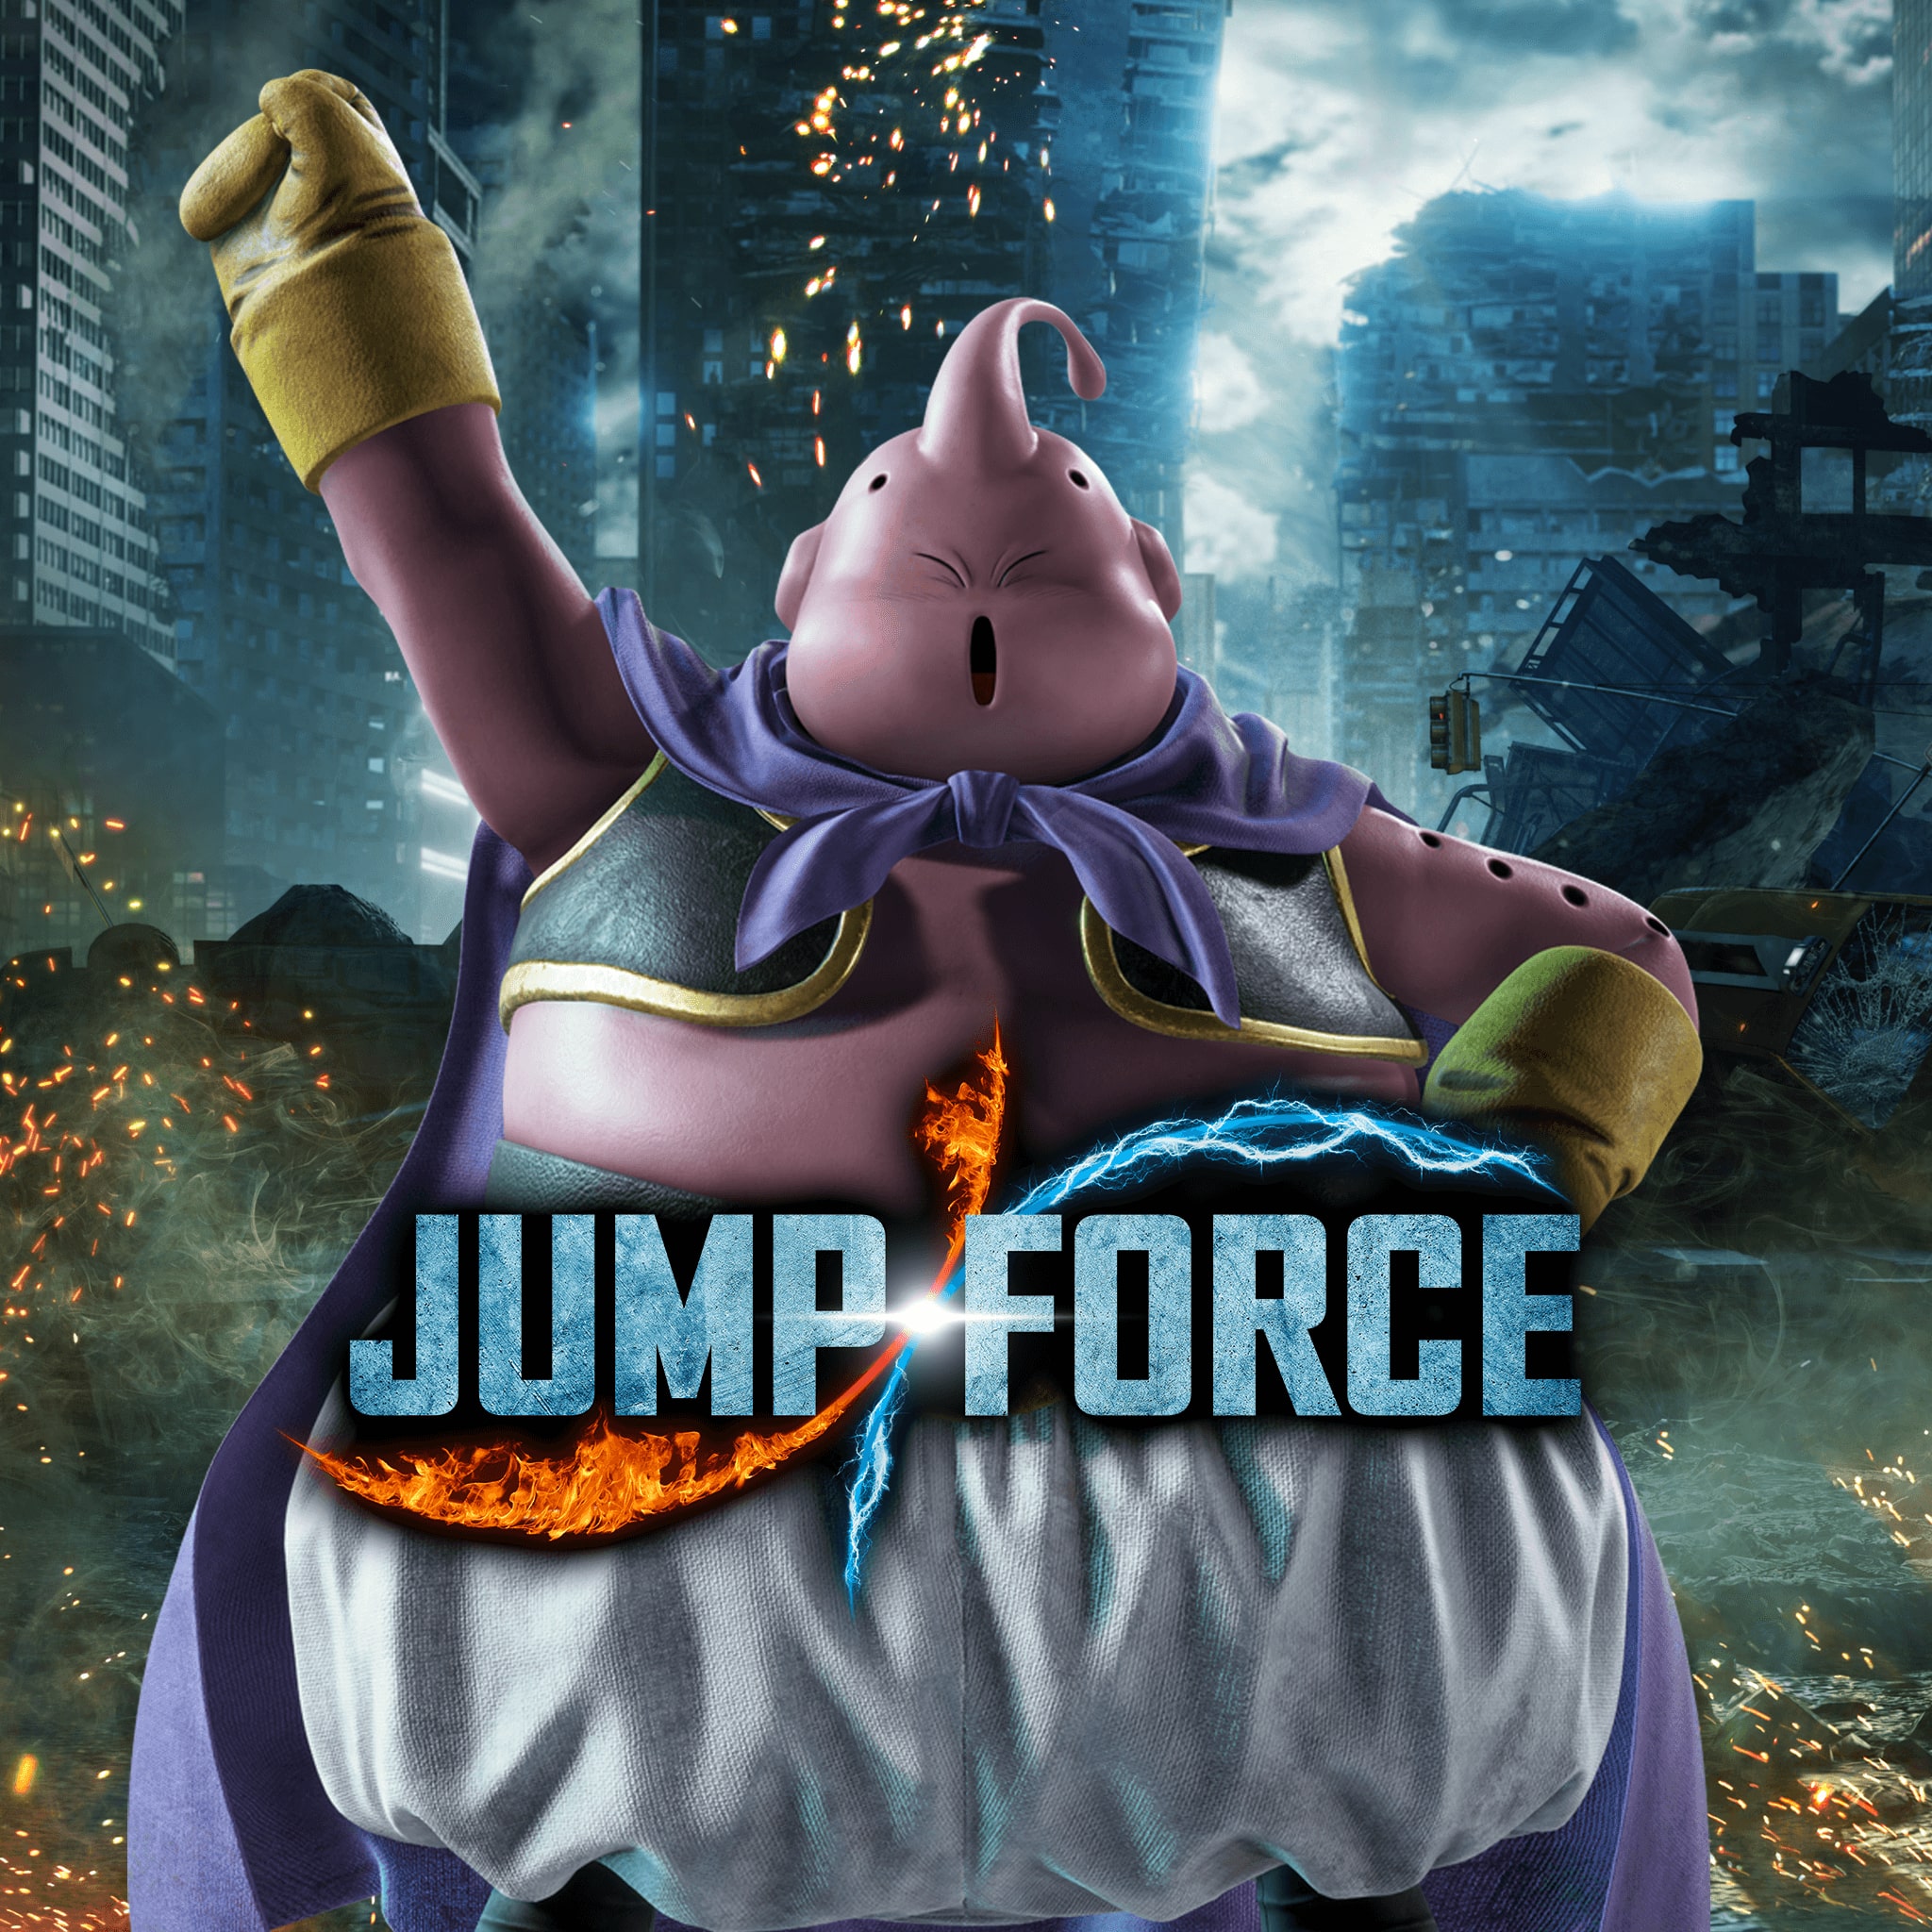 Jump Force: Majin Boo, de Dragon Ball Z, chega ao game em agosto